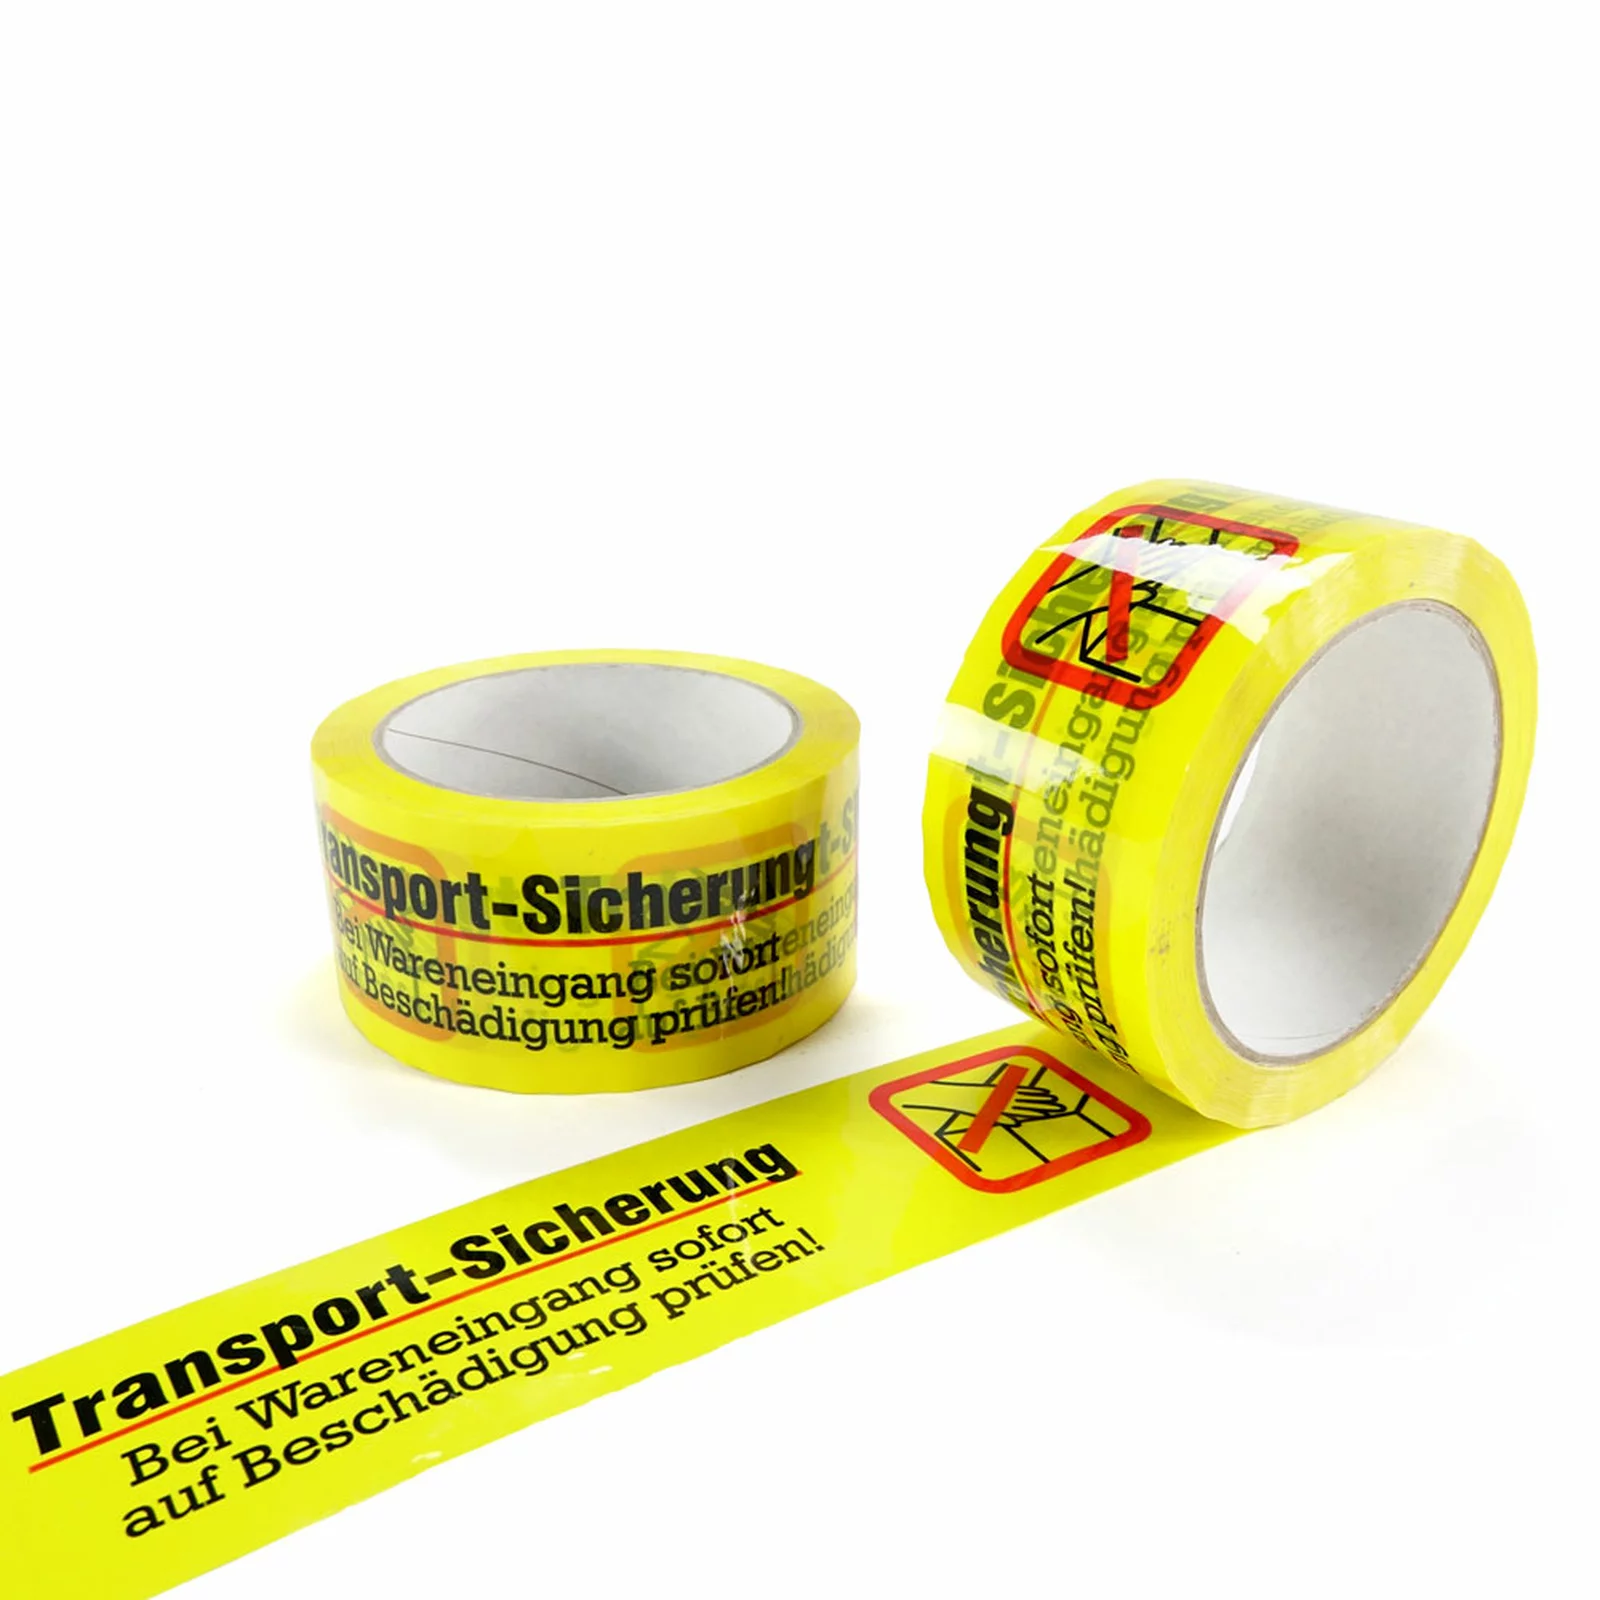 PP-Klebeband ⇒ 50 mm 66 lfm gelb mit Druck Transport-Sicherung